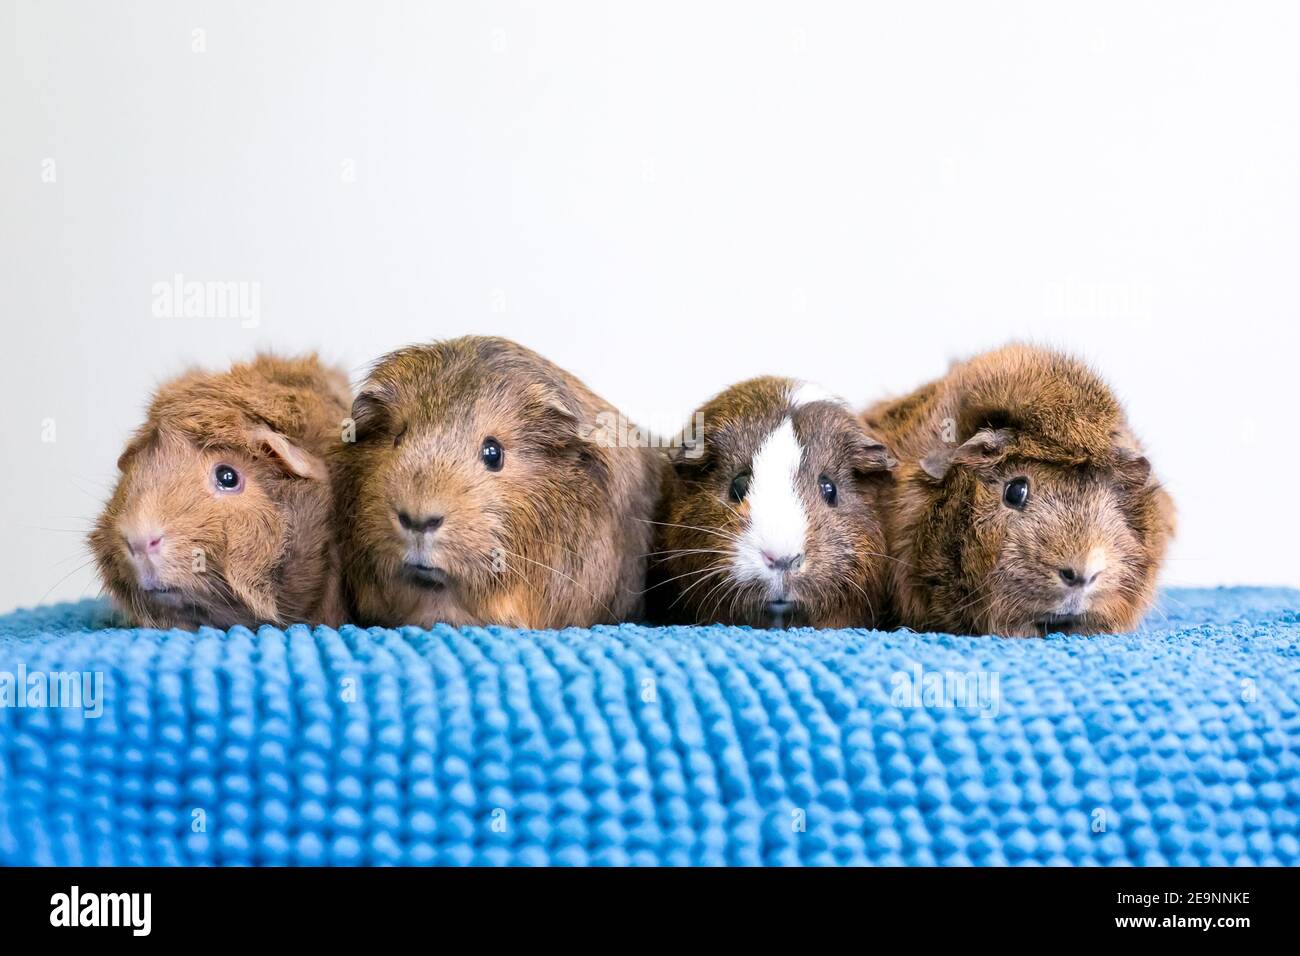 Eine Gruppe von vier Meerschweinchen stellten sich an Eine Reihe auf einer blauen Decke Stockfoto